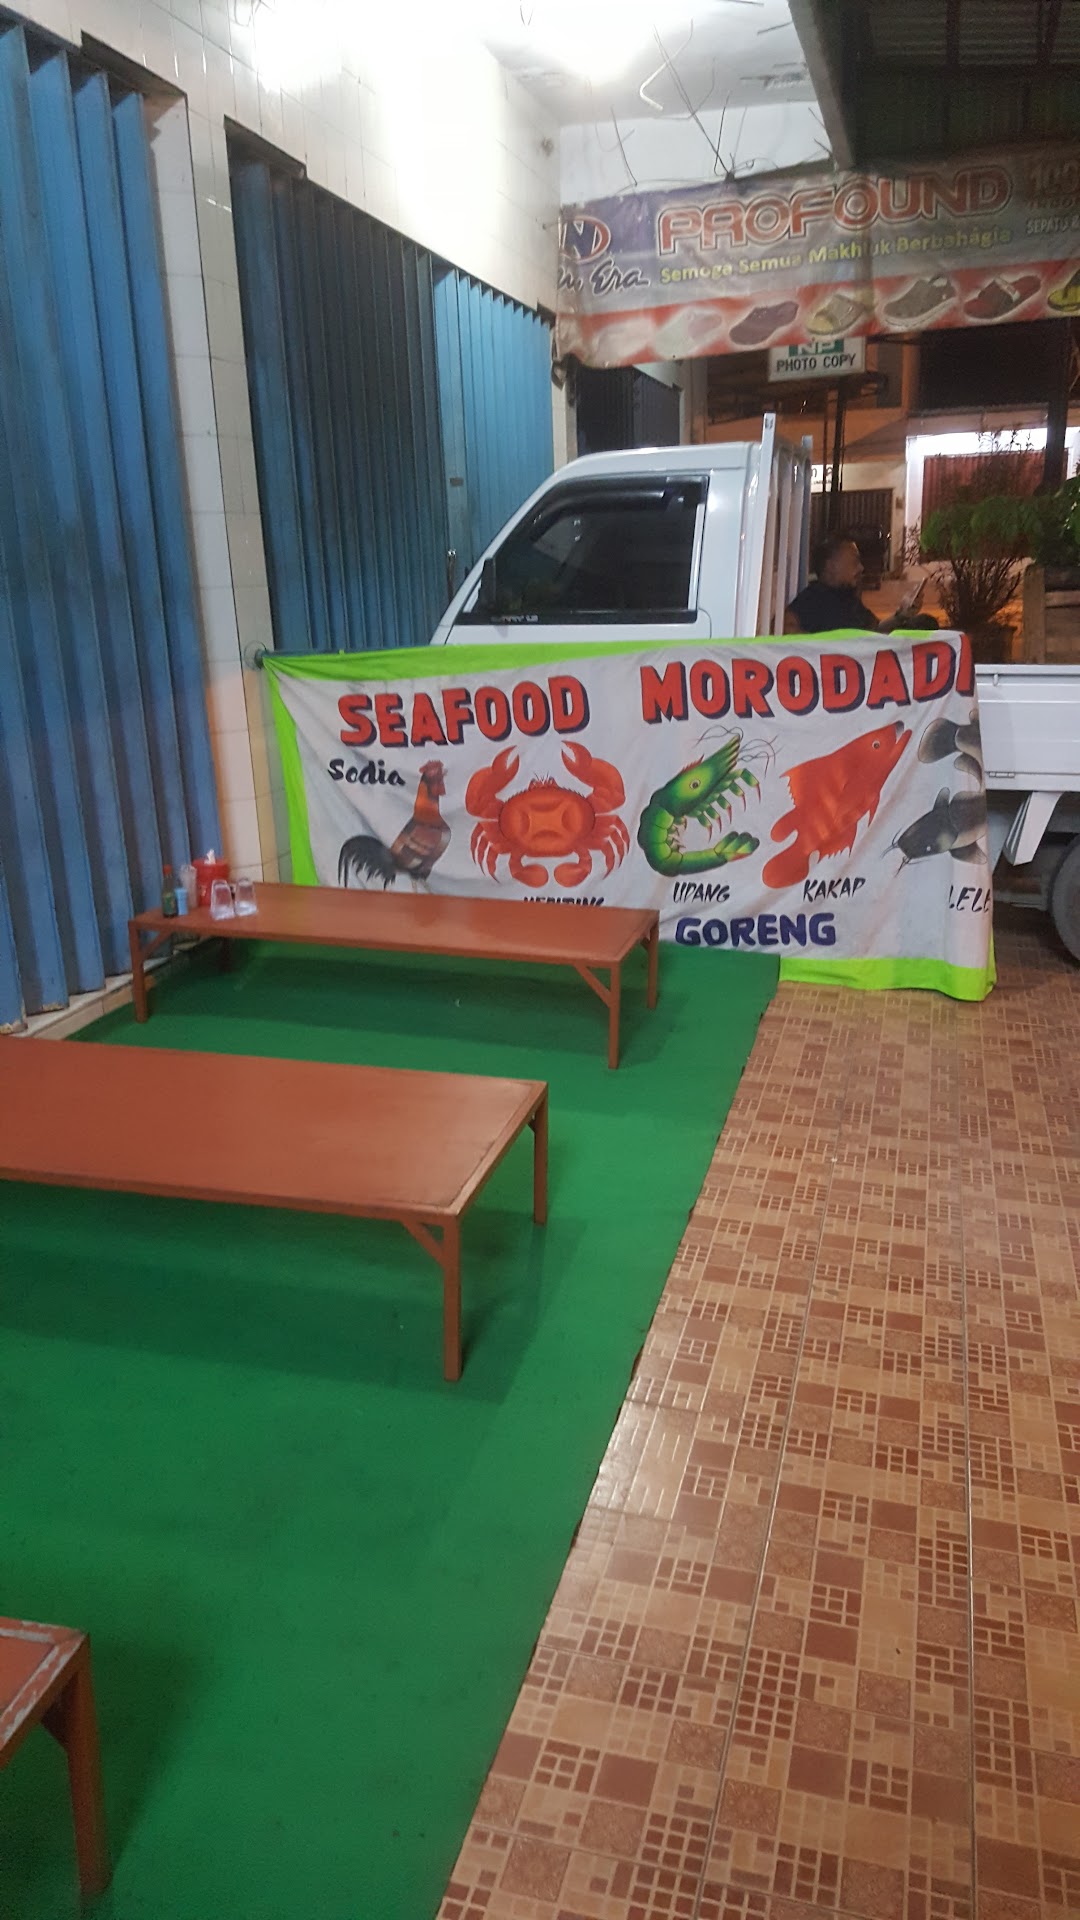 Seafood Morodadi